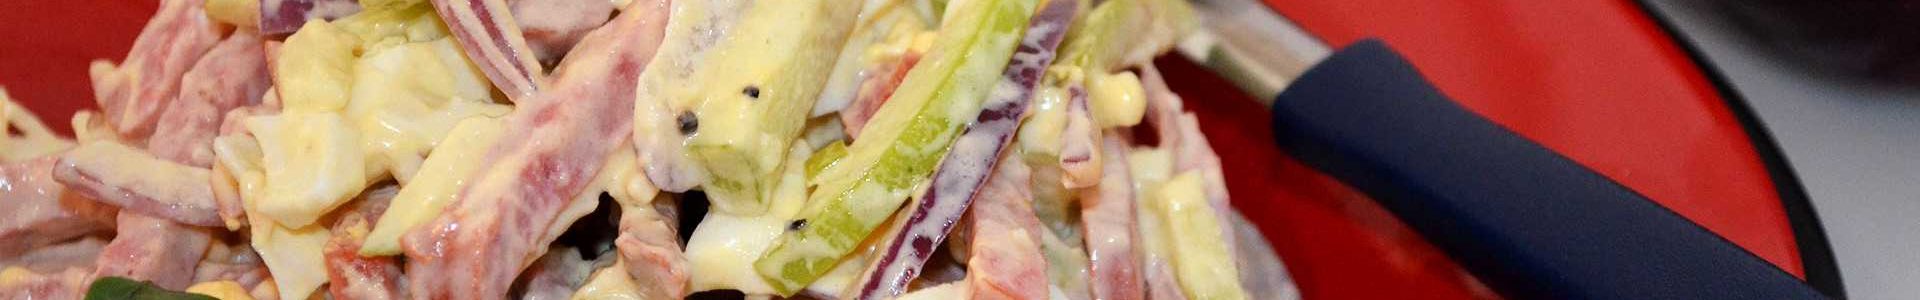 Супер быстрый салат — колбаса, яйца, яблоки и еще кое-что